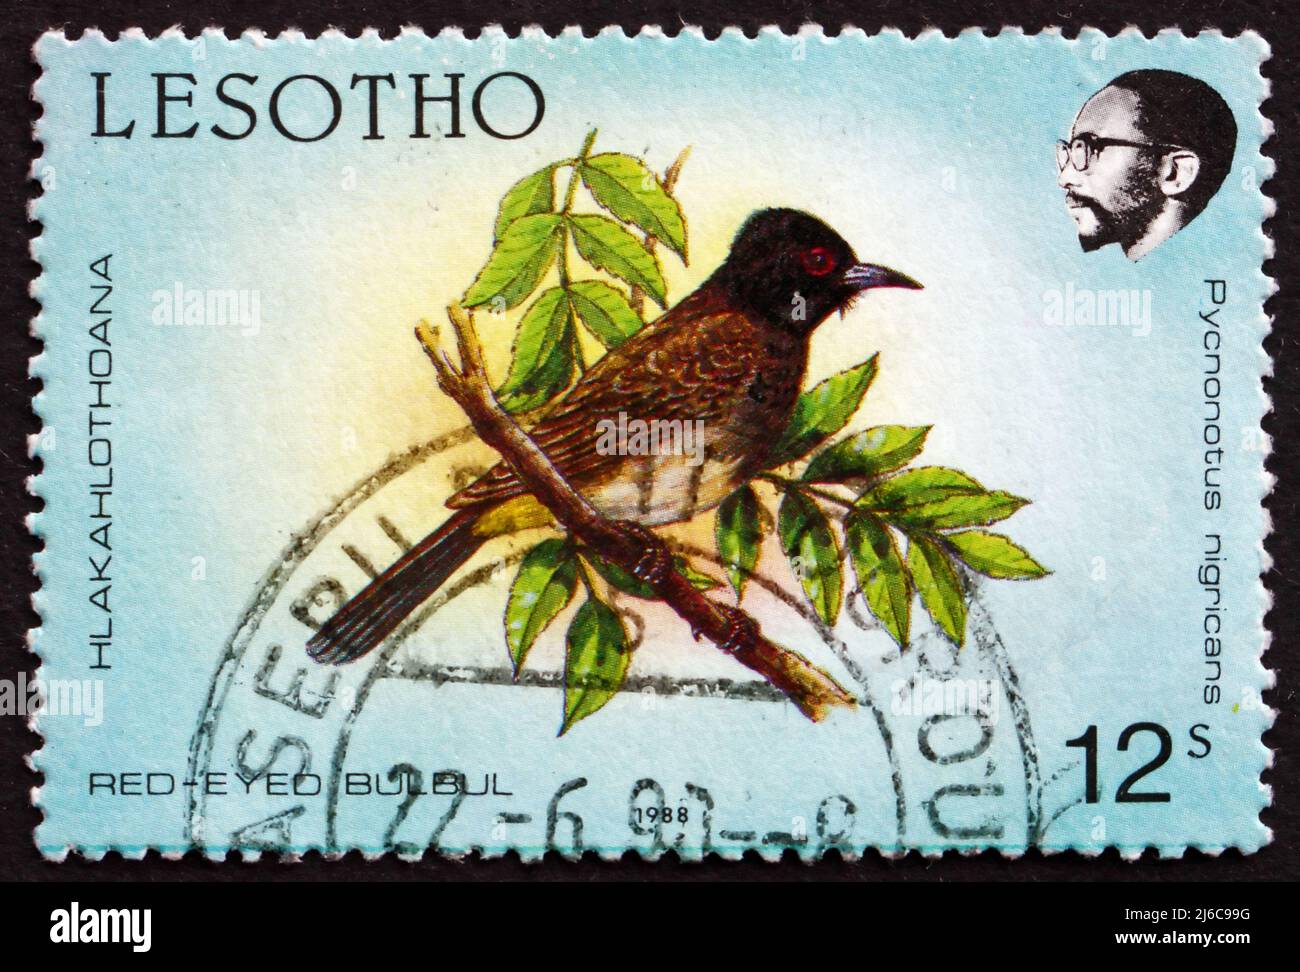 LESOTHO - VERS 1988 : un timbre imprimé au Lesotho montre le Bulbul africain à yeux rouges, Pycnonotus nigricans, Bird, vers 1988 Banque D'Images